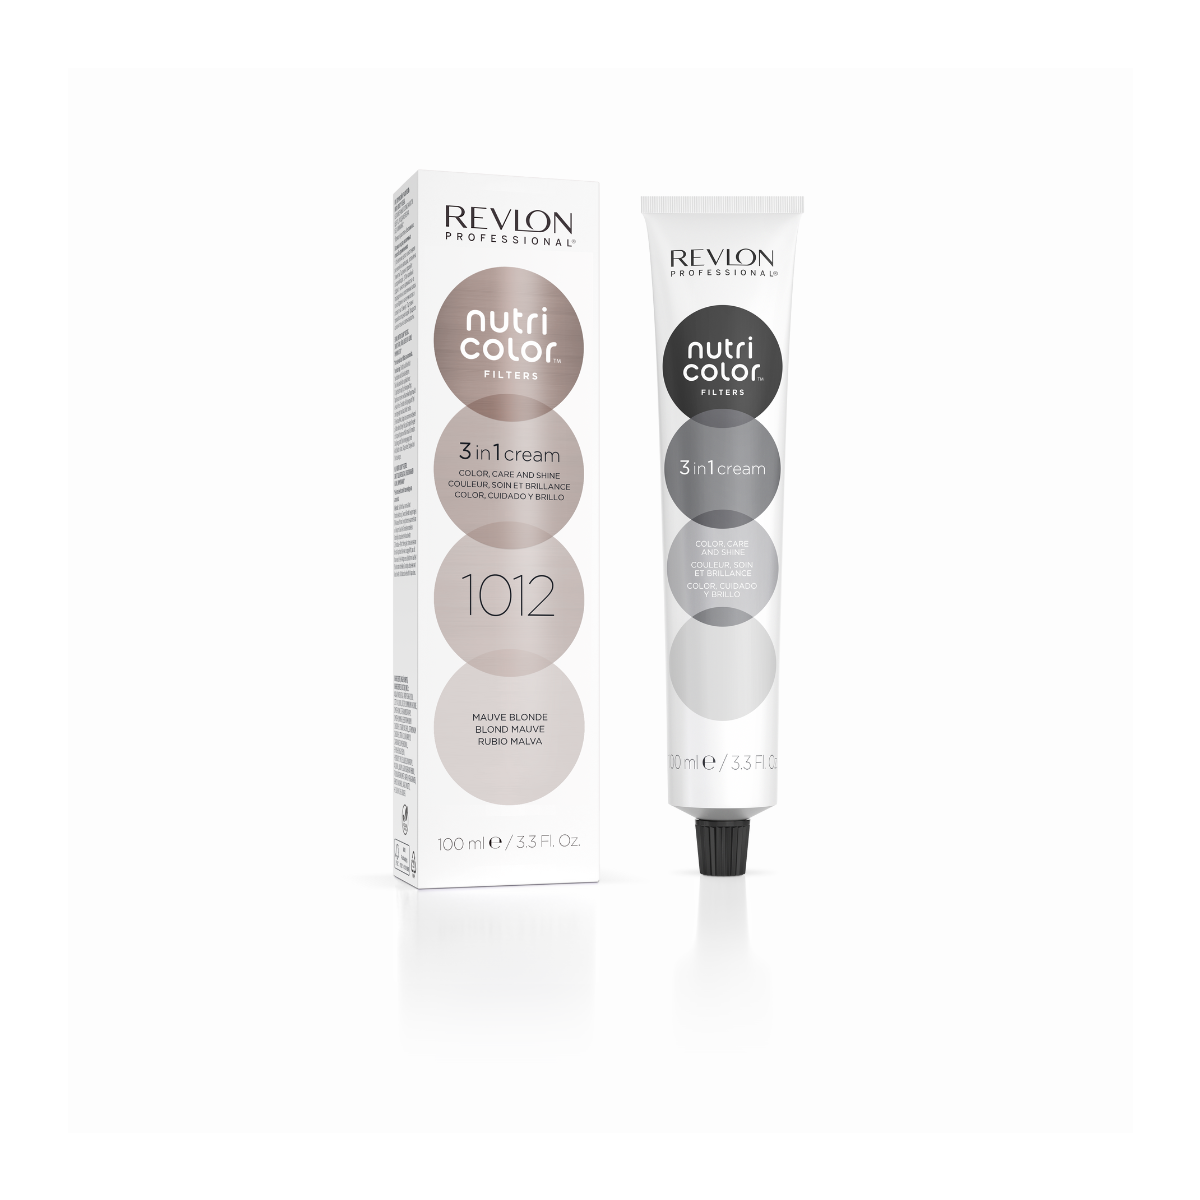 Revlon Pro Nutri Color Filters 1012 - Mauve Blonde 100 ml